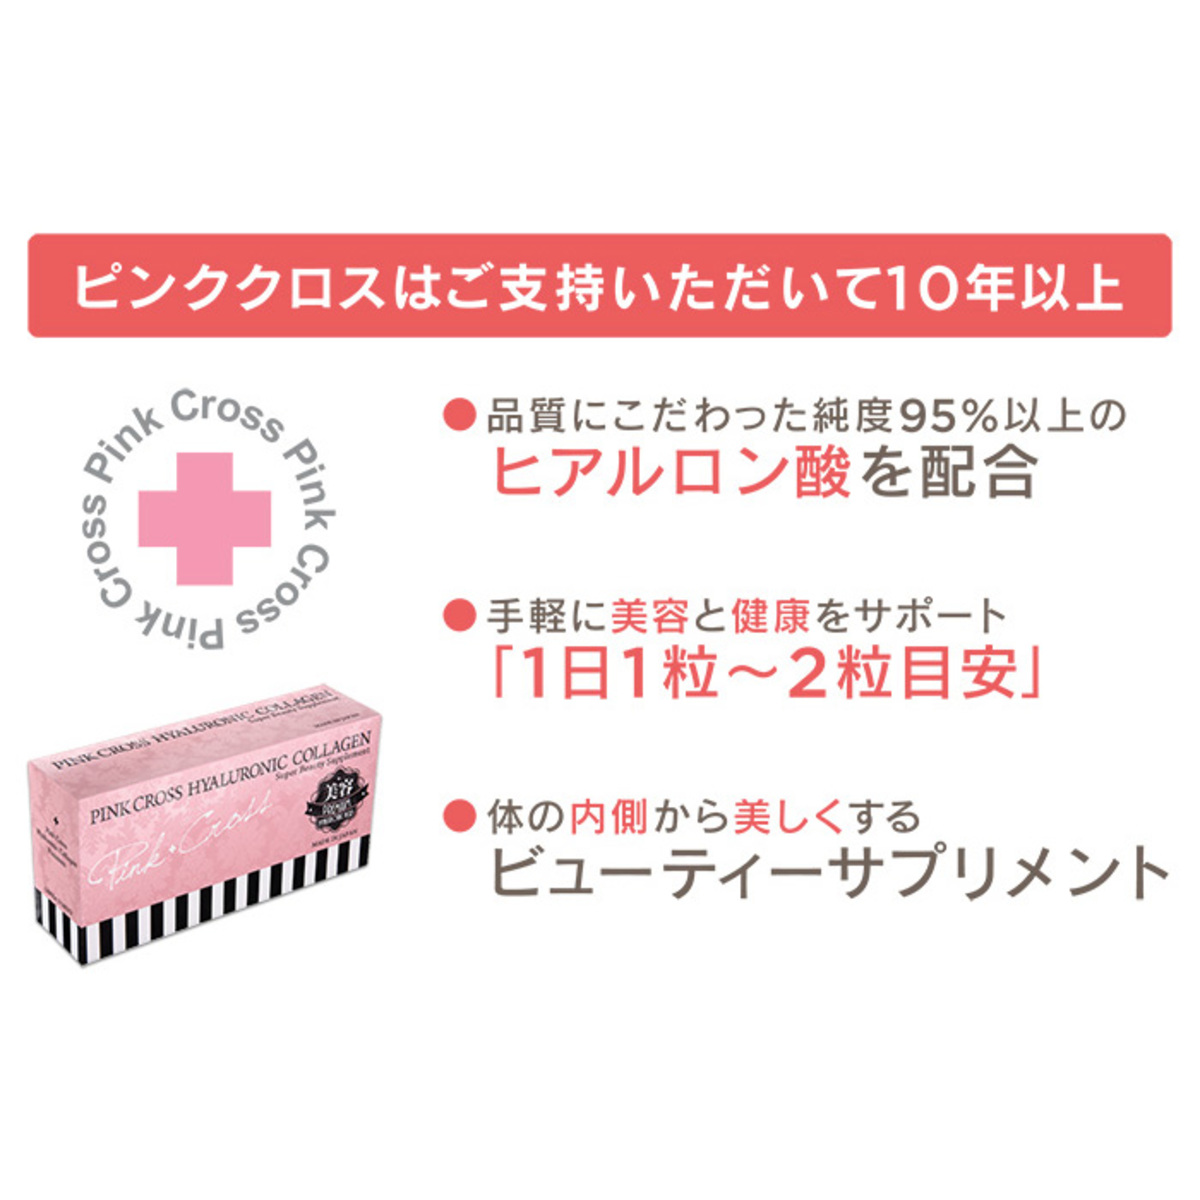 ピンククロス飲むヒアルロン酸コラーゲンプレミアム - QVC.jp